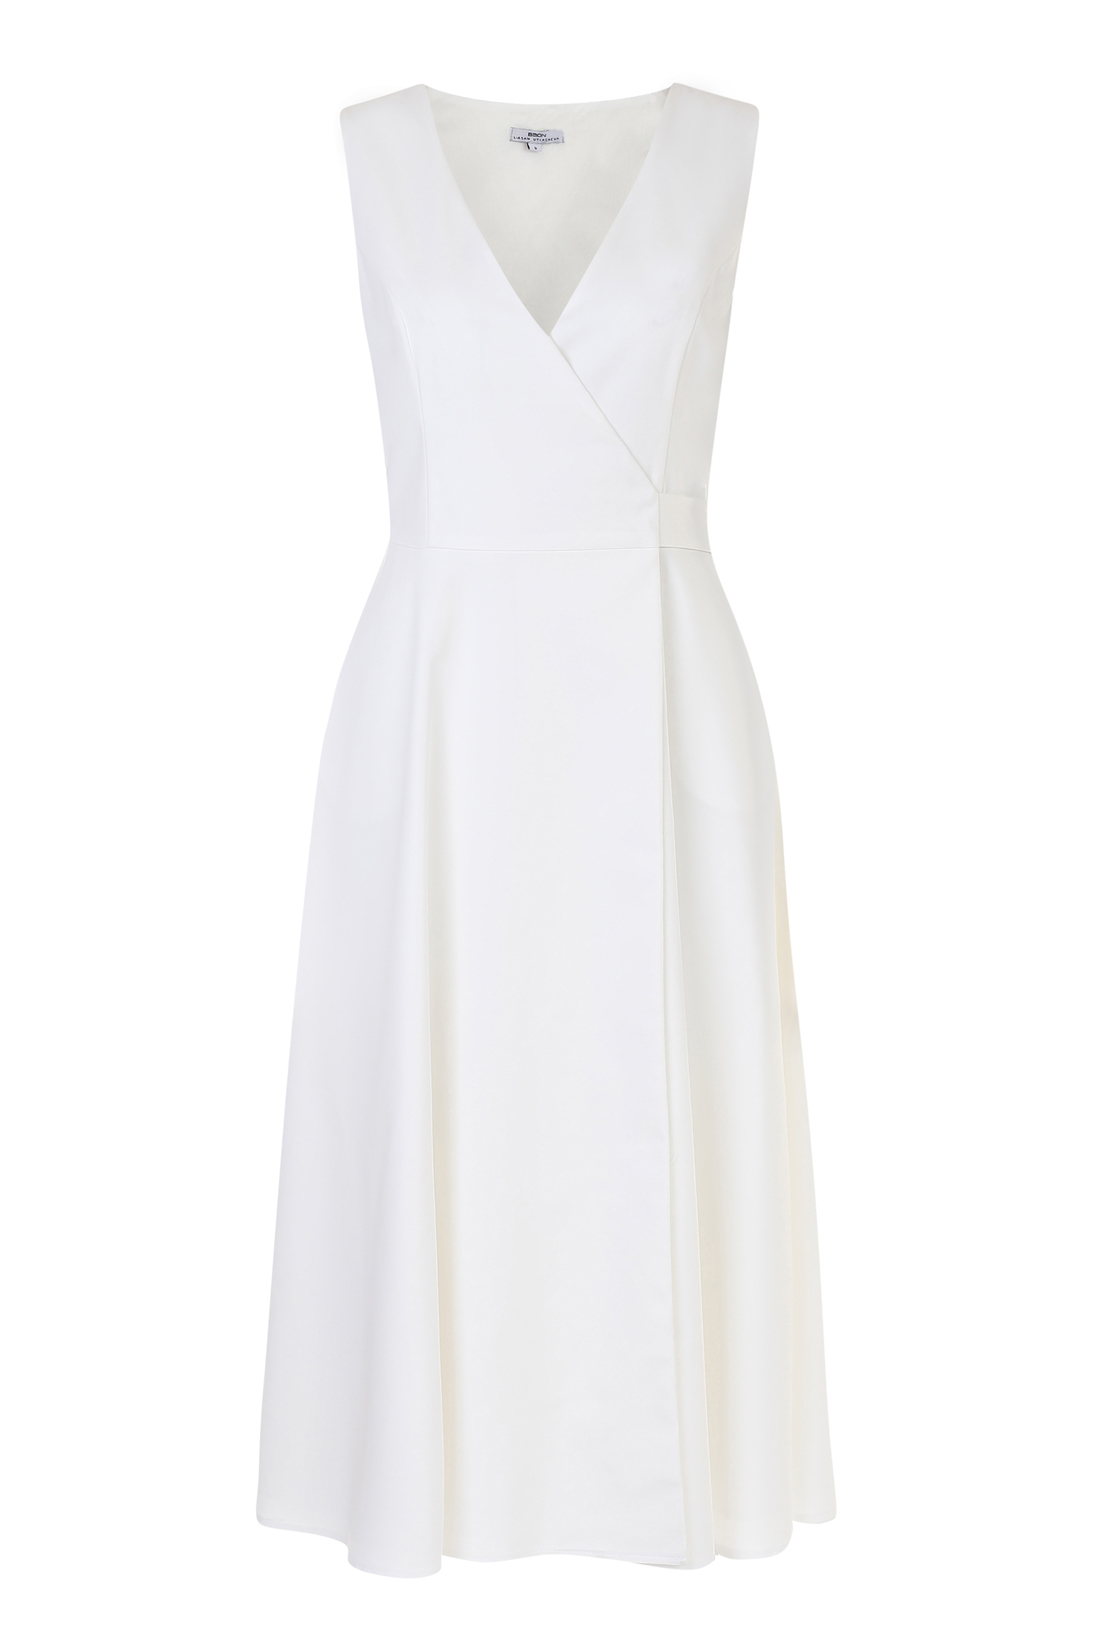 Белое платье с запахом (арт. baon B458125), размер M, цвет белый Белое платье с запахом (арт. baon B458125) - фото 2